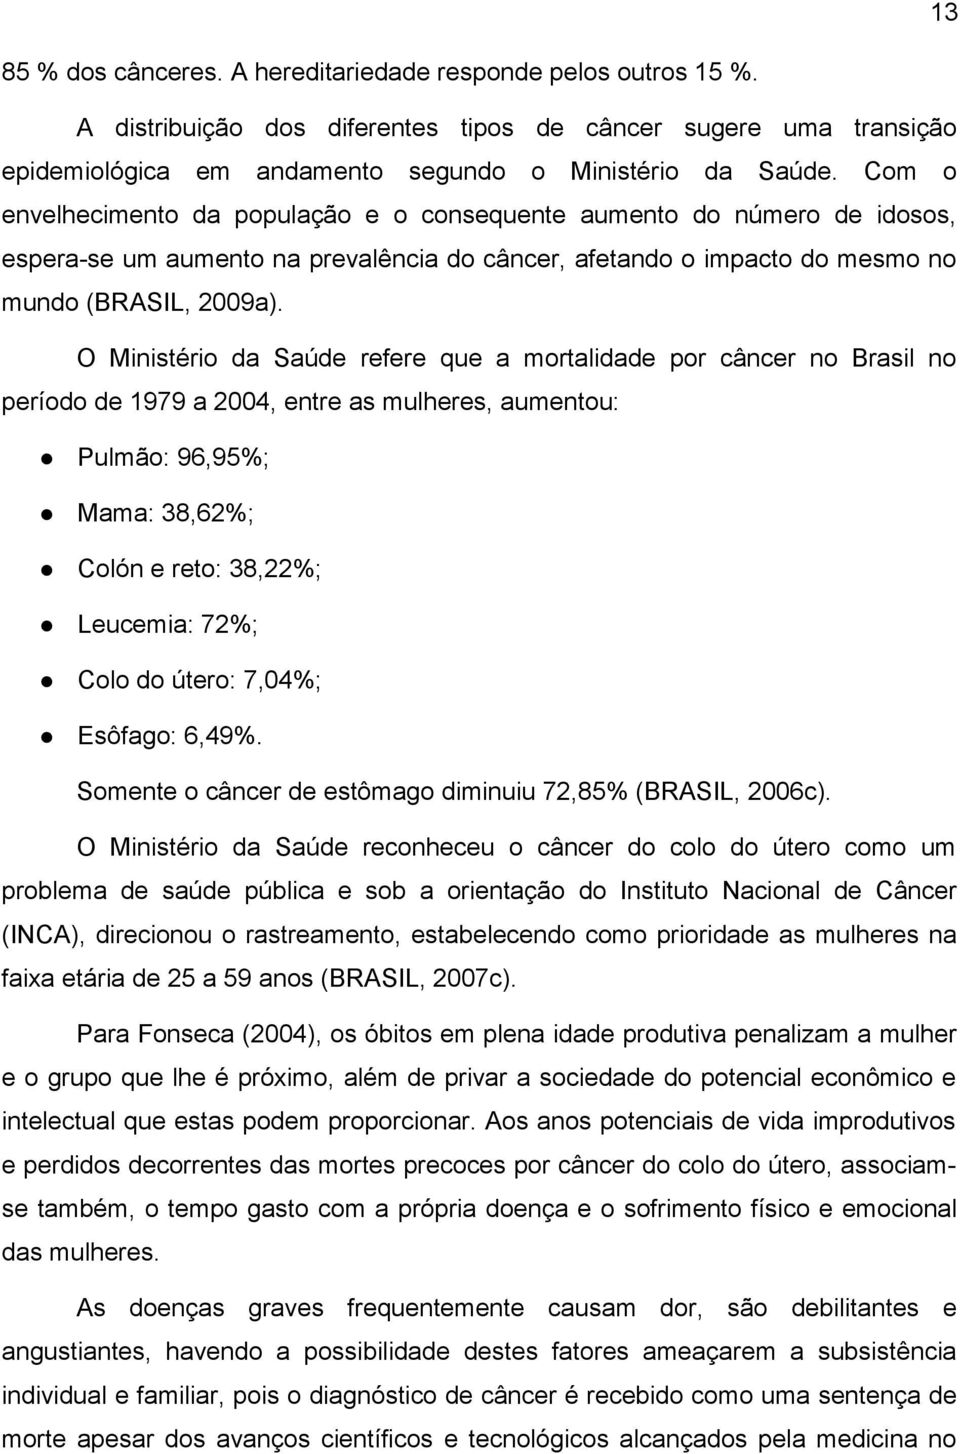 O Ministério da Saúde refere que a mortalidade por câncer no Brasil no período de 1979 a 2004, entre as mulheres, aumentou: Pulmão: 96,95%; Mama: 38,62%; Colón e reto: 38,22%; Leucemia: 72%; Colo do